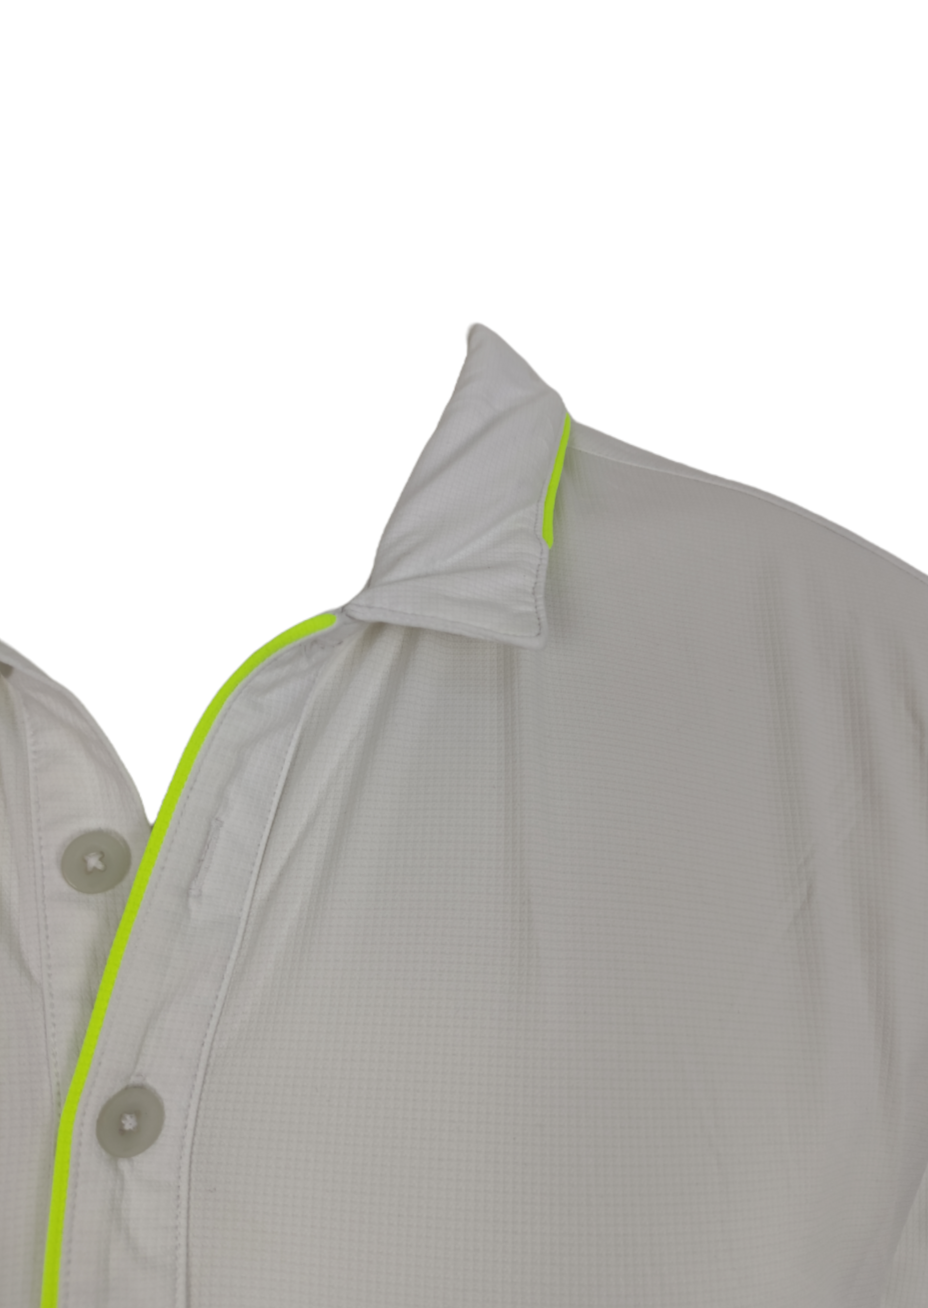 Αθλητική Ανδρική Μπλούζα - T-Shirt NIKE Dri - Fit σε Λευκό χρώμα (XL)